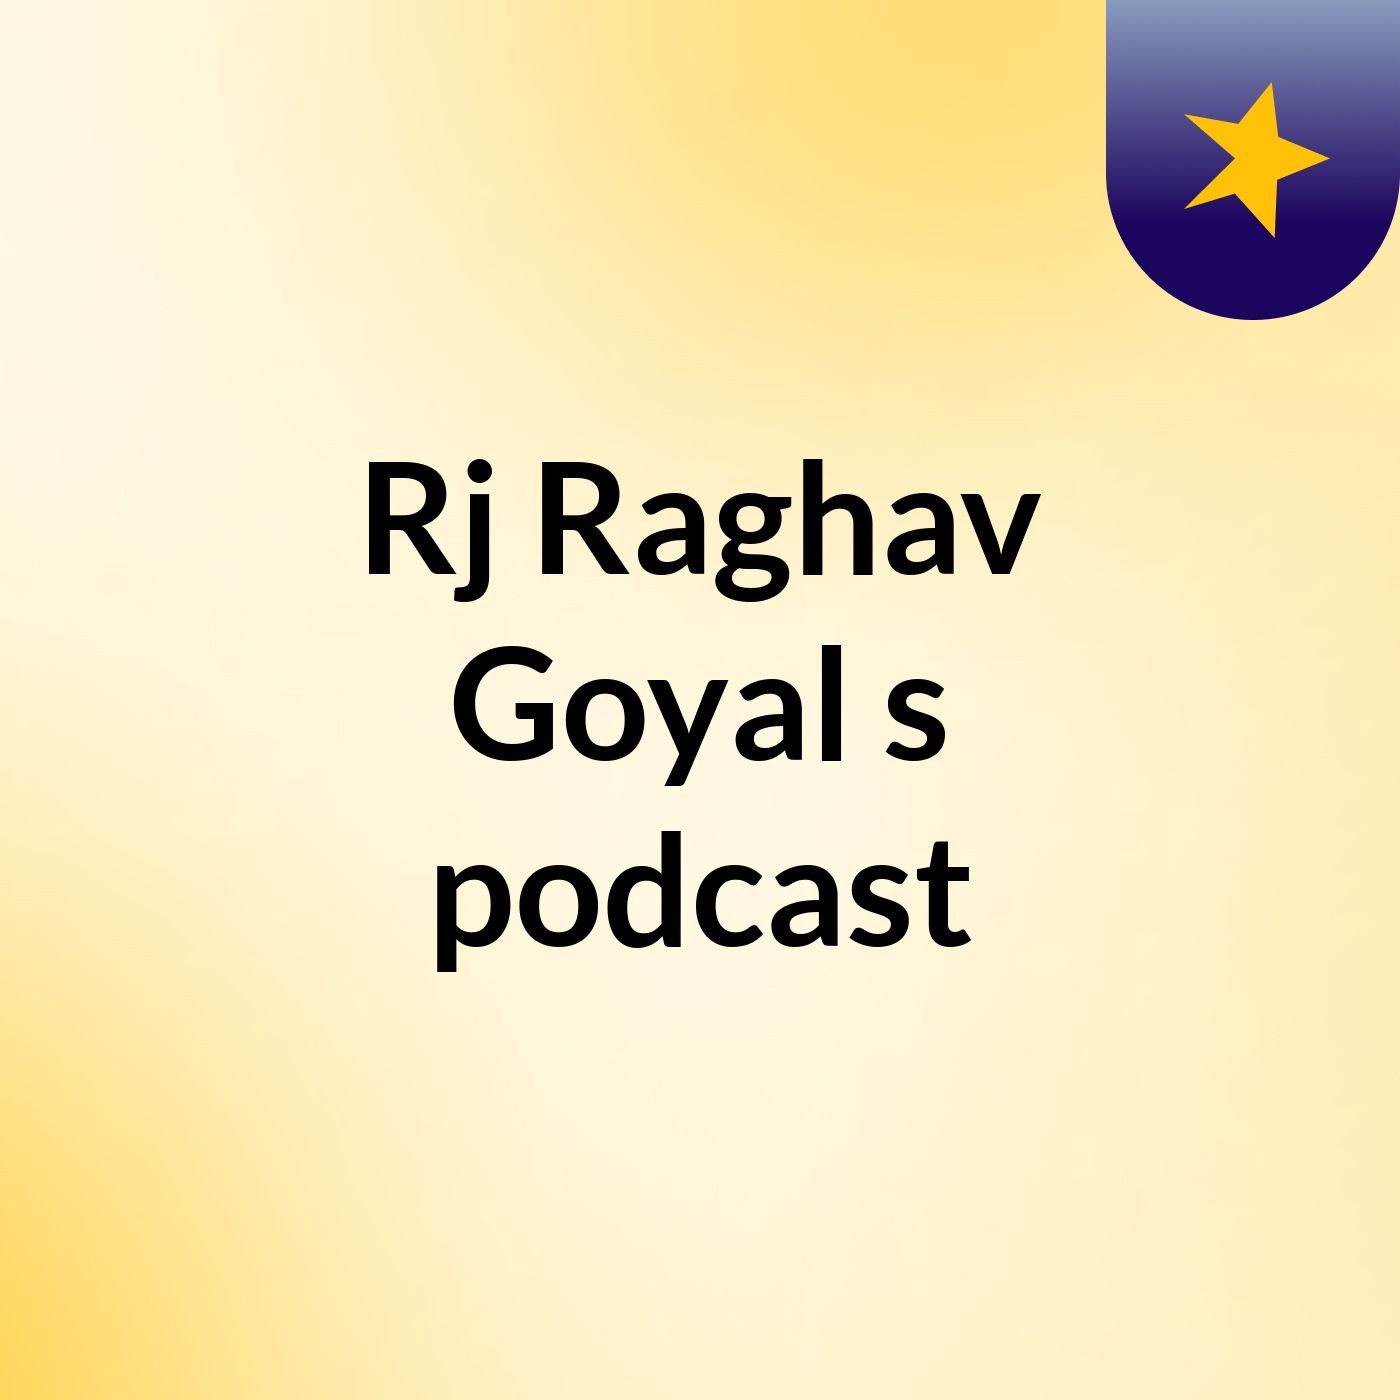 Episode 1 - Rj Raghav Goyal's podcast